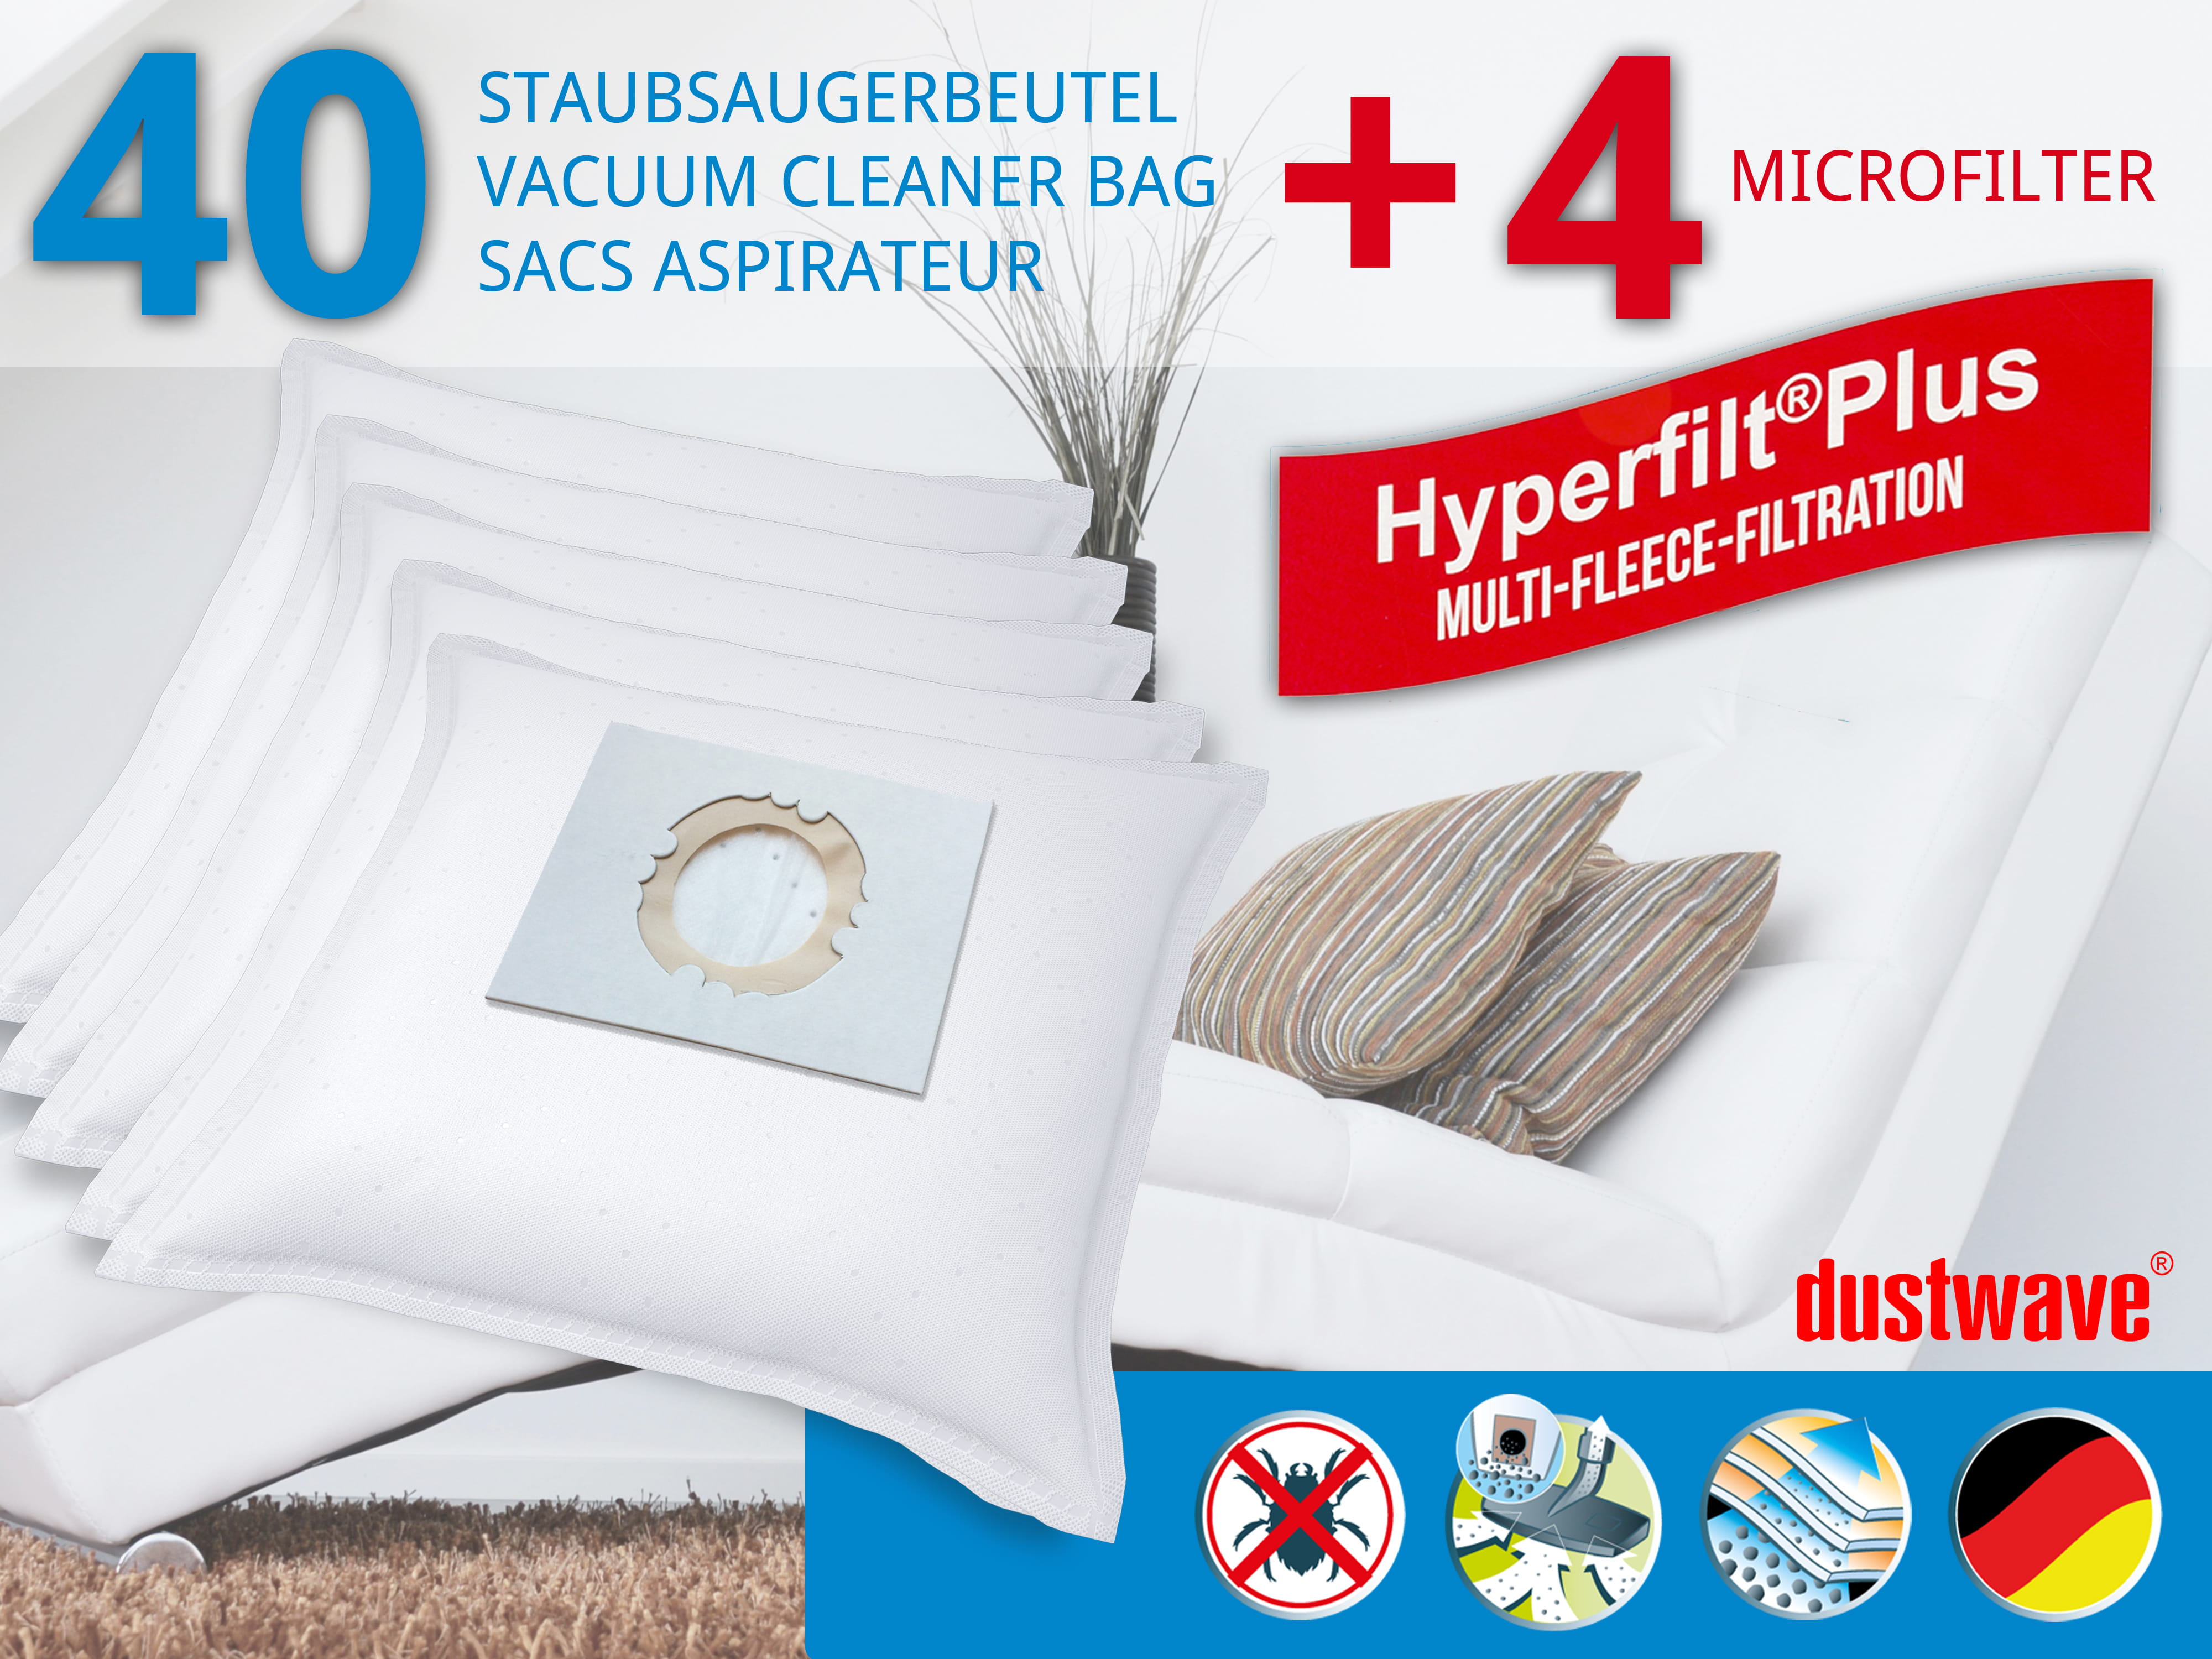 Dustwave® 40 Staubsaugerbeutel für Blue Sky BIE 1400 - hocheffizient, mehrlagiges Mikrovlies mit Hygieneverschluss - Made in Germany